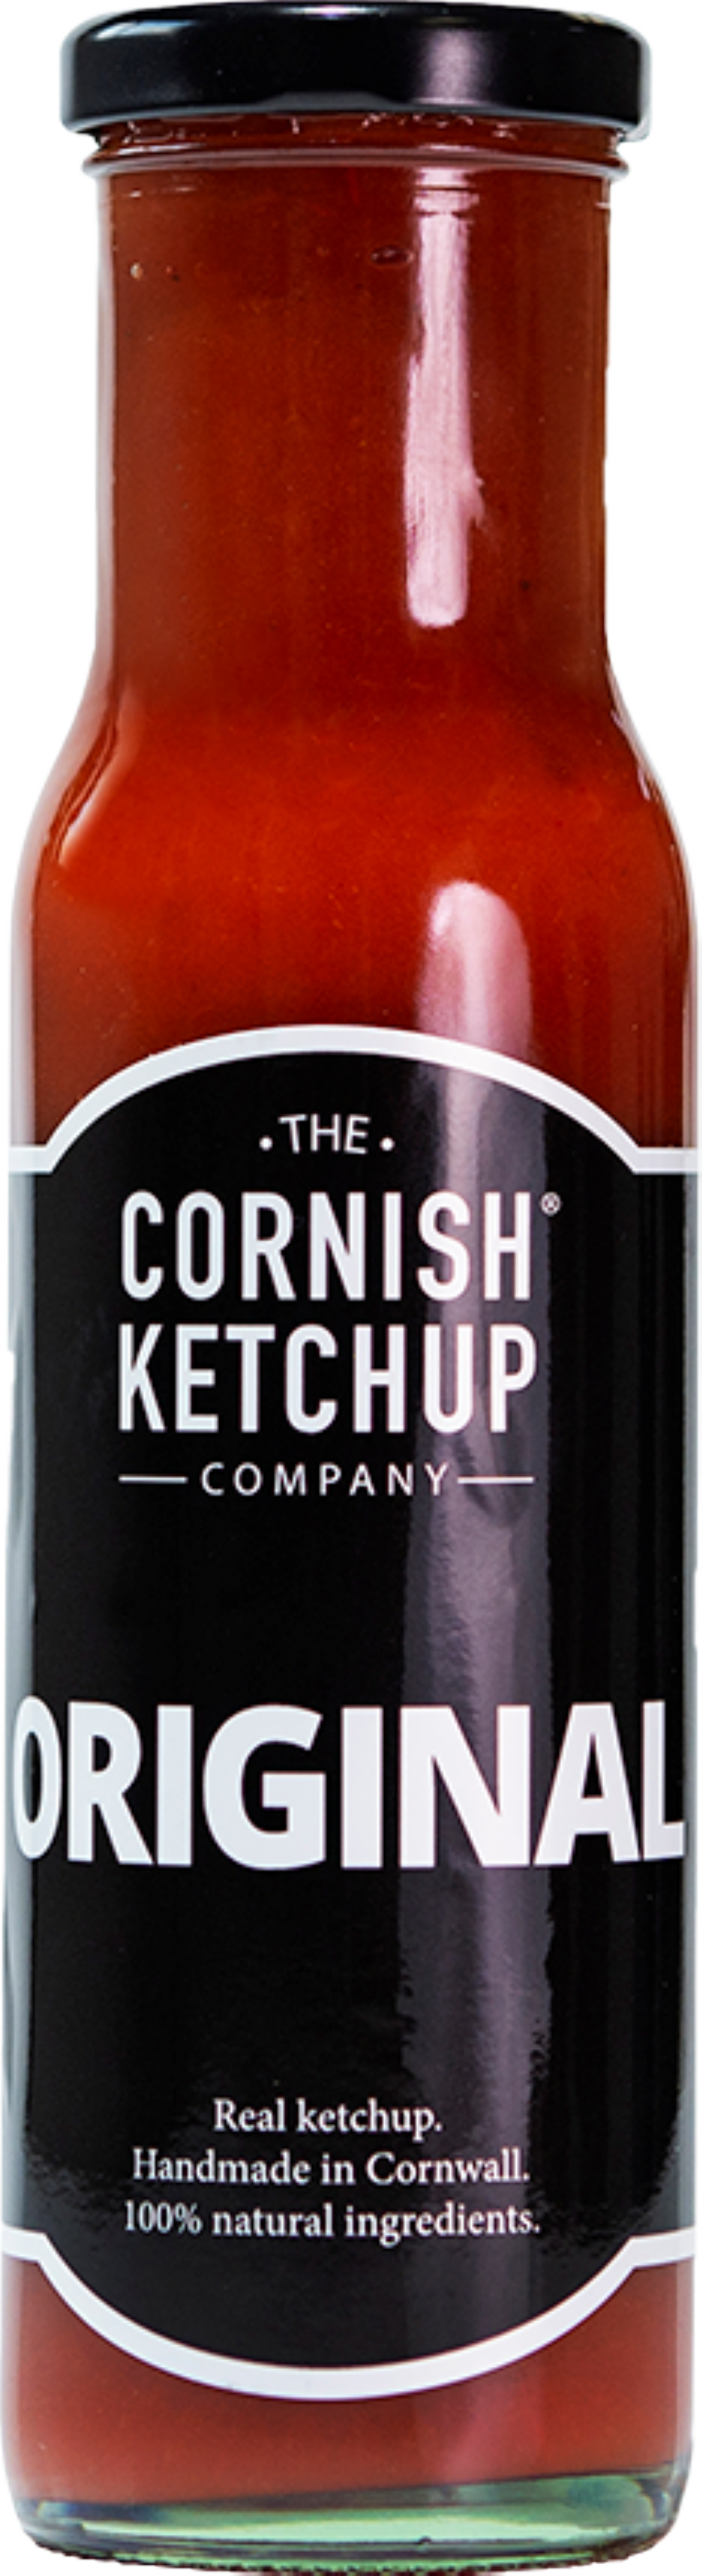 THE CORNISH KETCHUP CO. Original Ketchup 255g